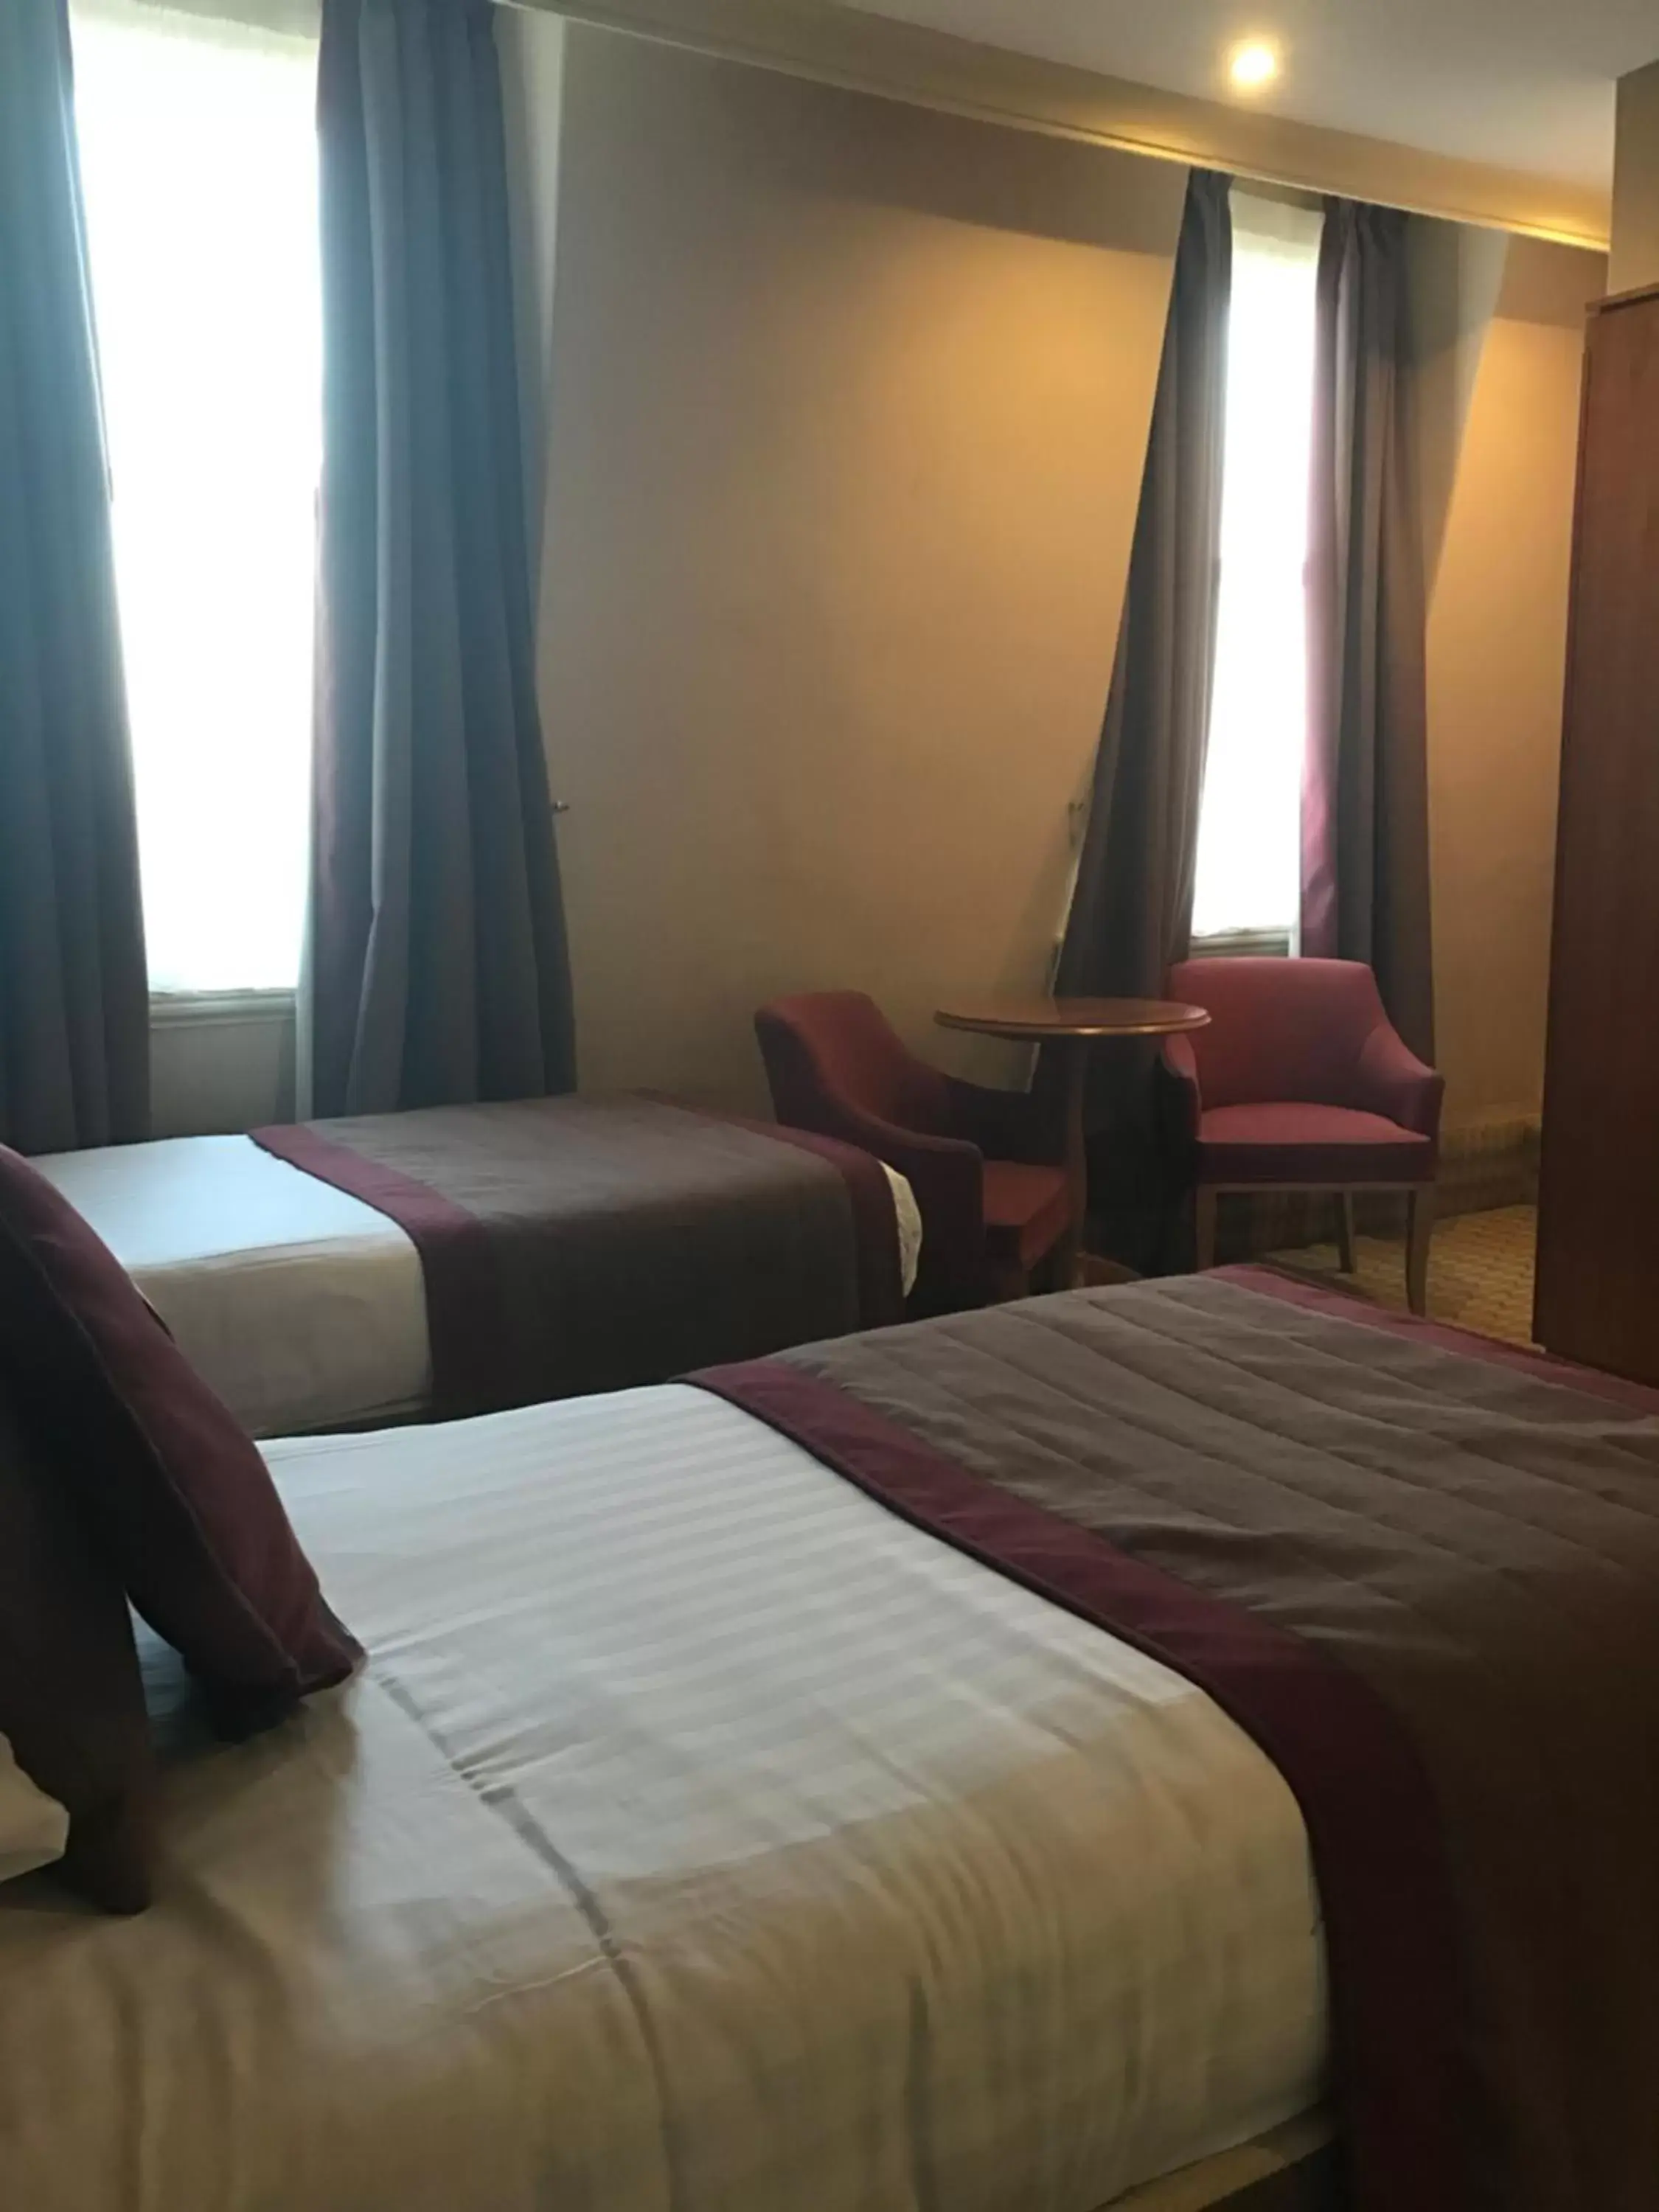 Bedroom, Bed in Crown & Mitre Hotel